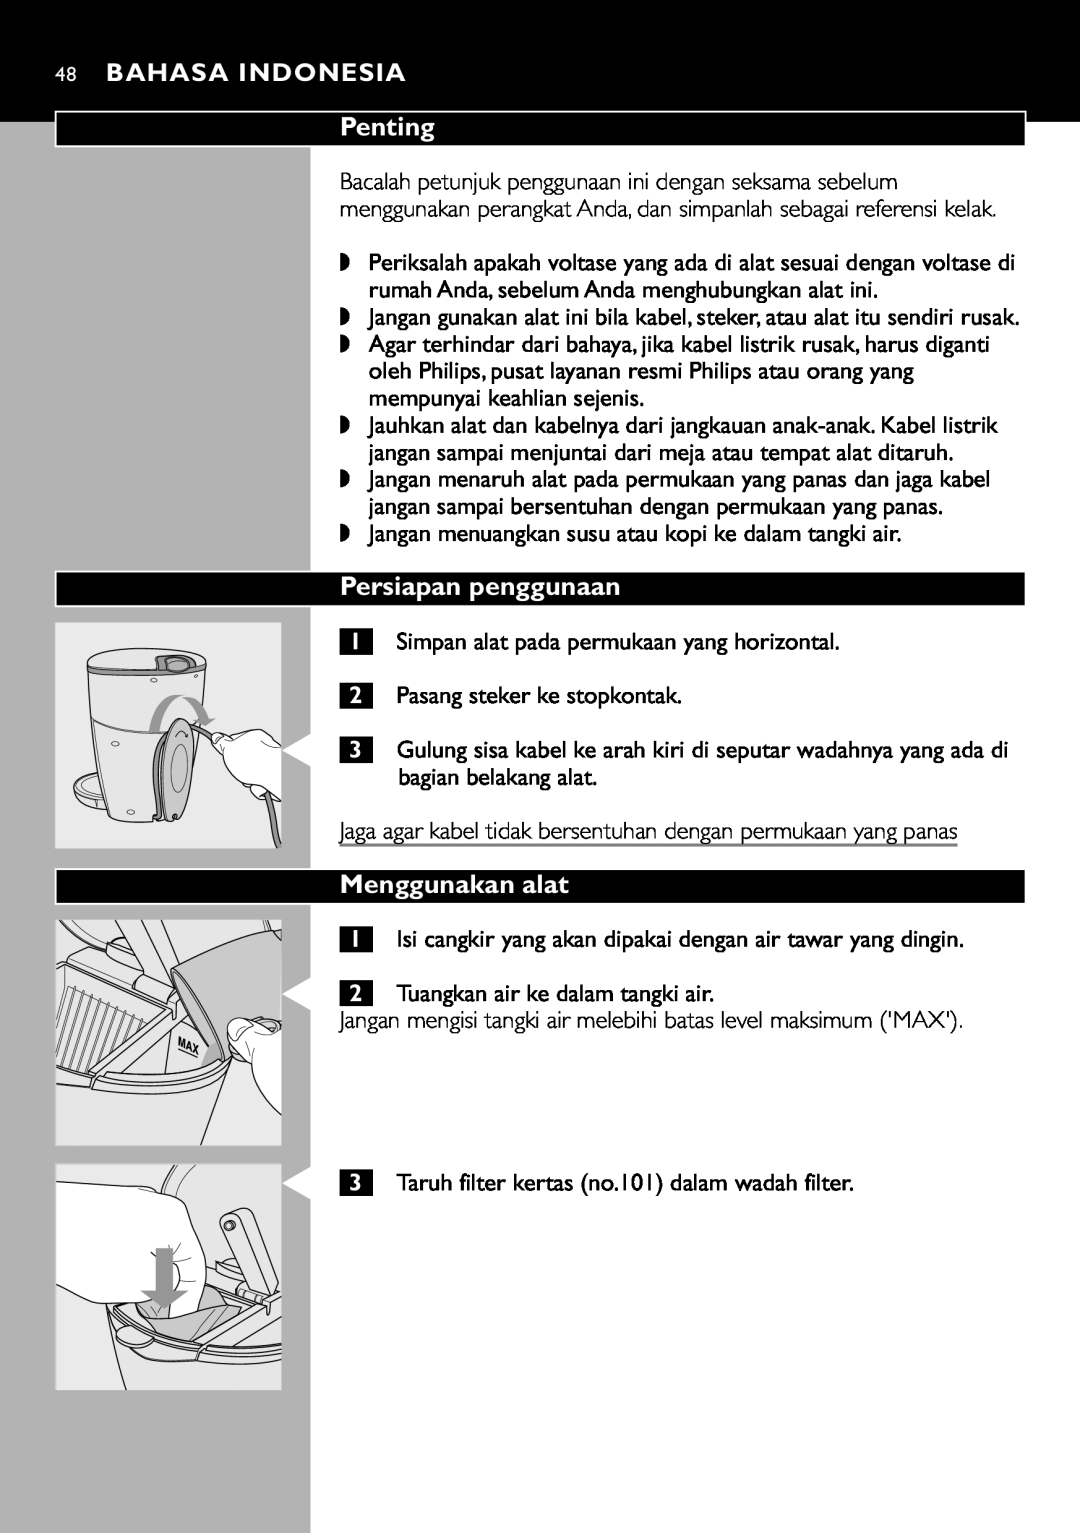 Cucina Pro HD7140 manual Persiapan penggunaan, Menggunakan alat, 48BAHASA INDONESIA Penting, Pasang steker ke stopkontak 